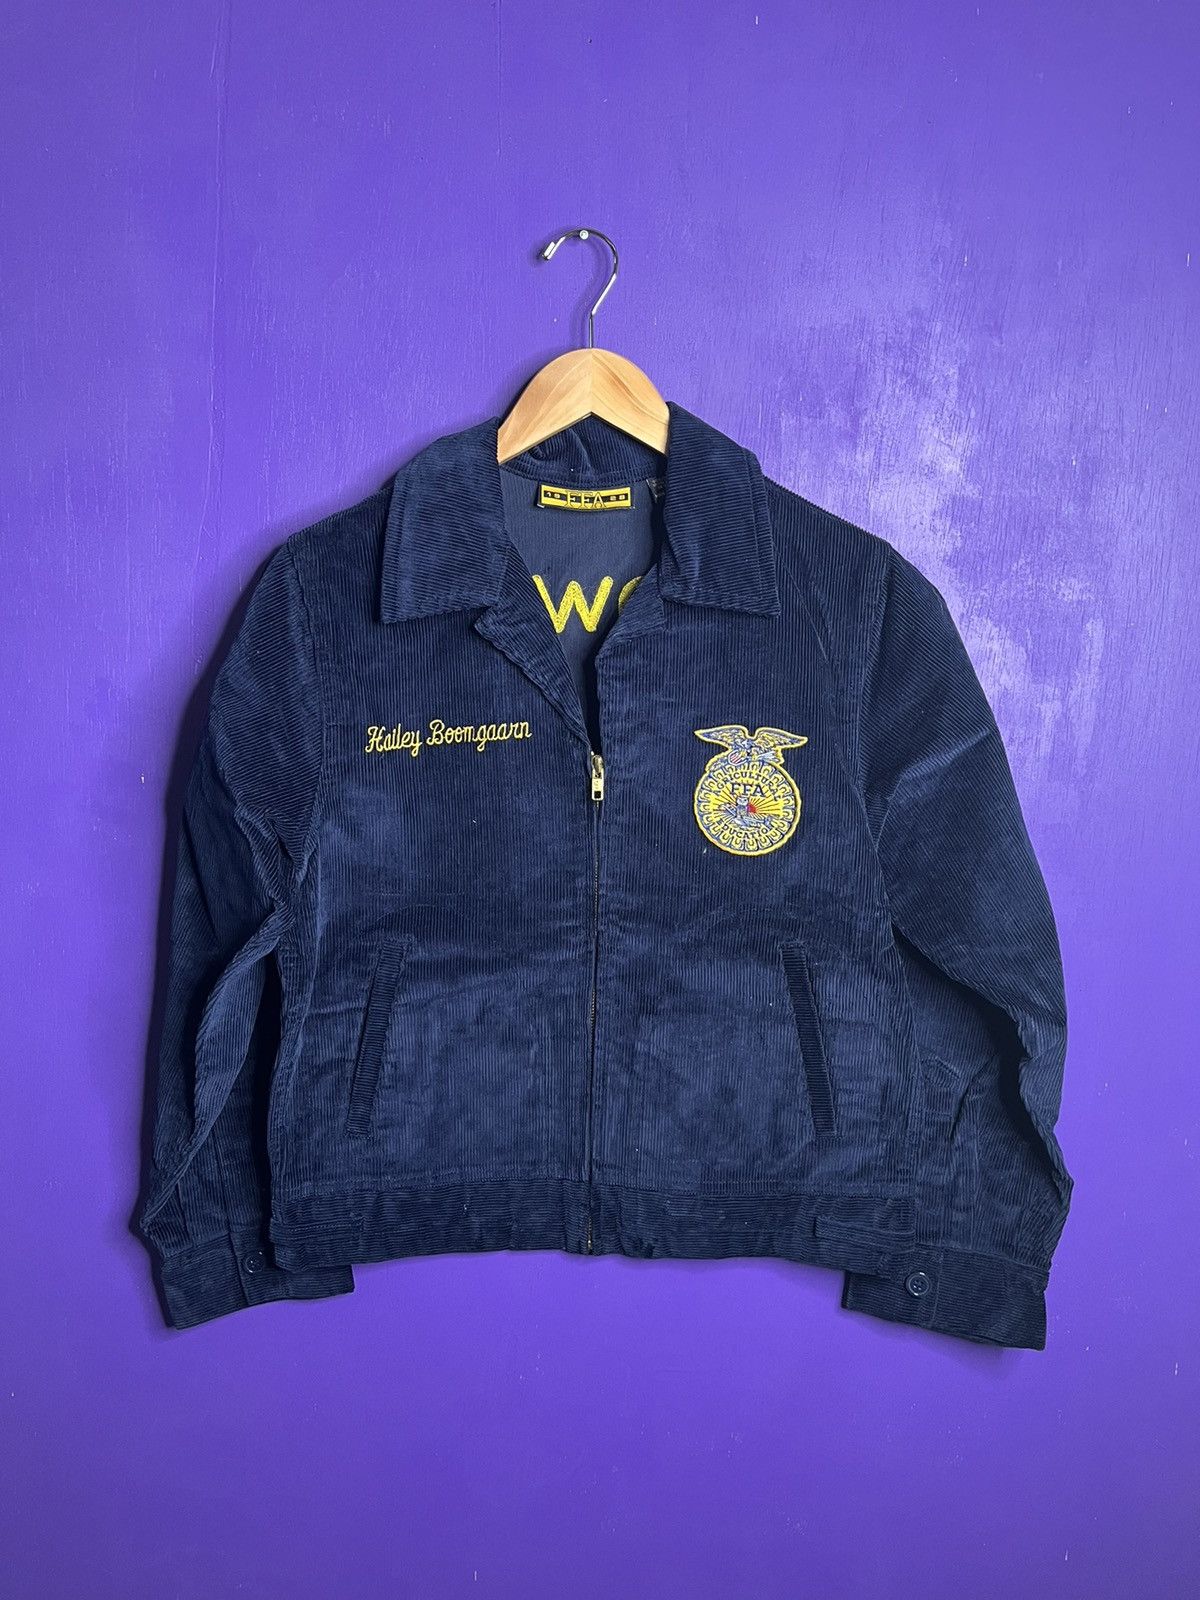 Vintage Ffa Jacket | Grailed